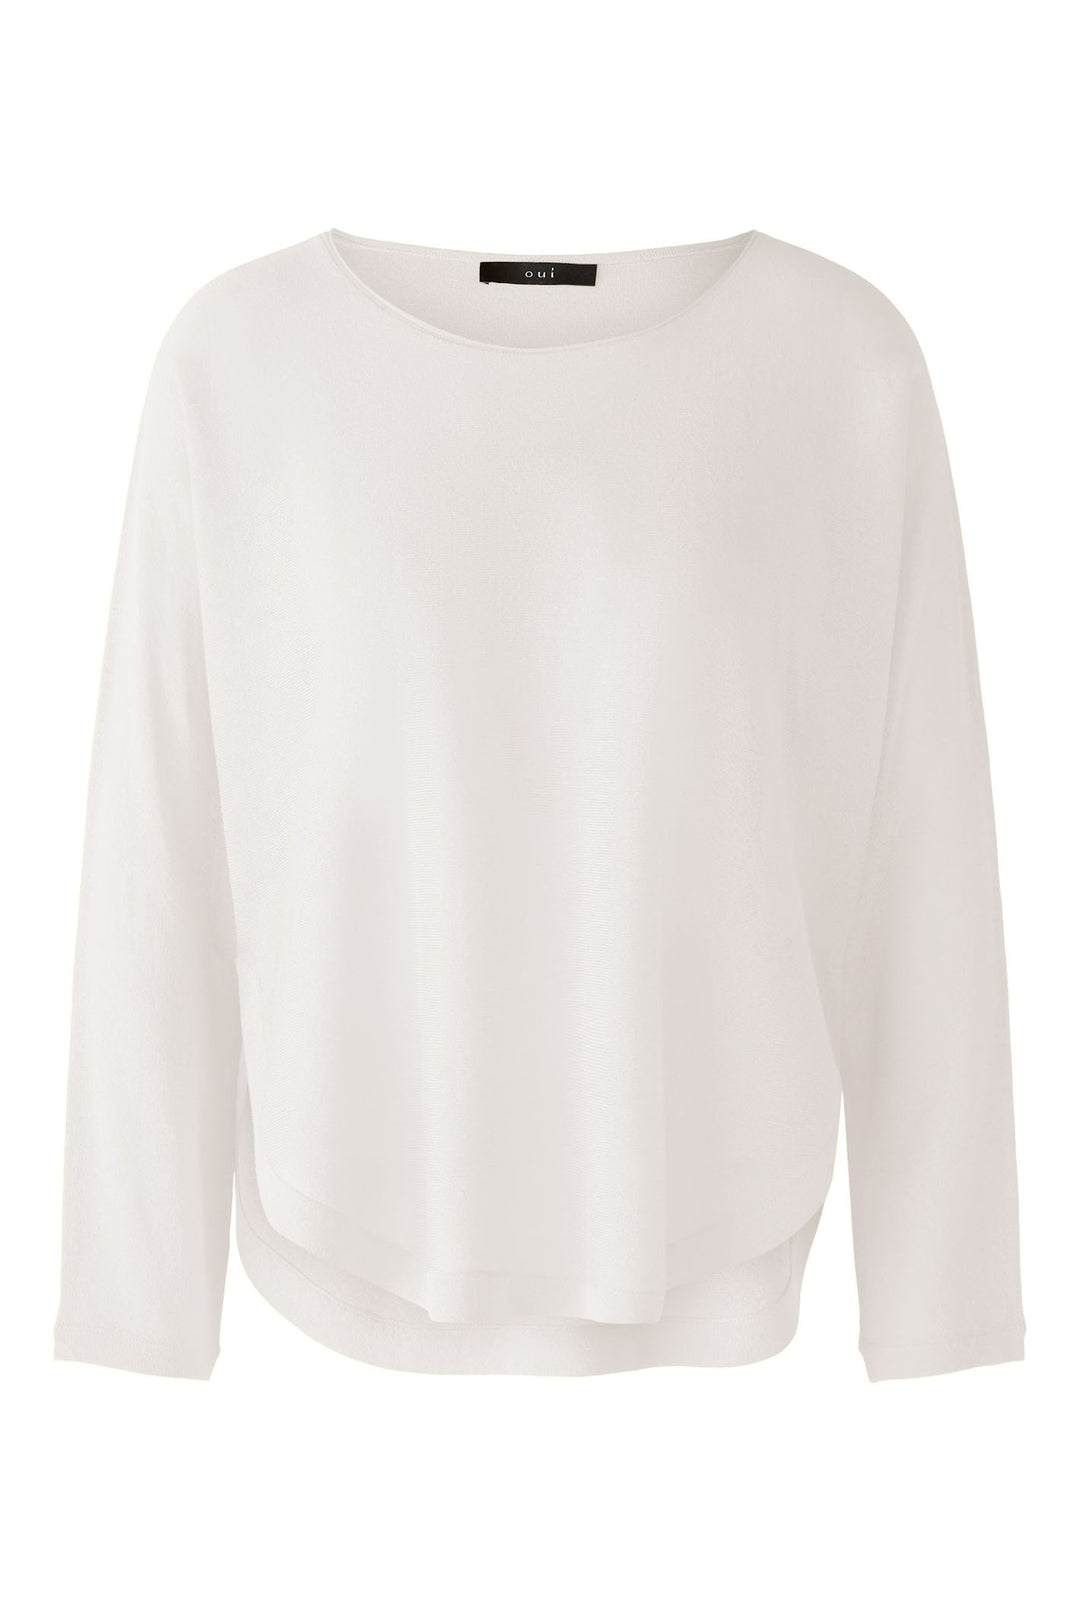 Oui 87457 Optic White Shirt Hem Jumper - Olivia Grace Fashion